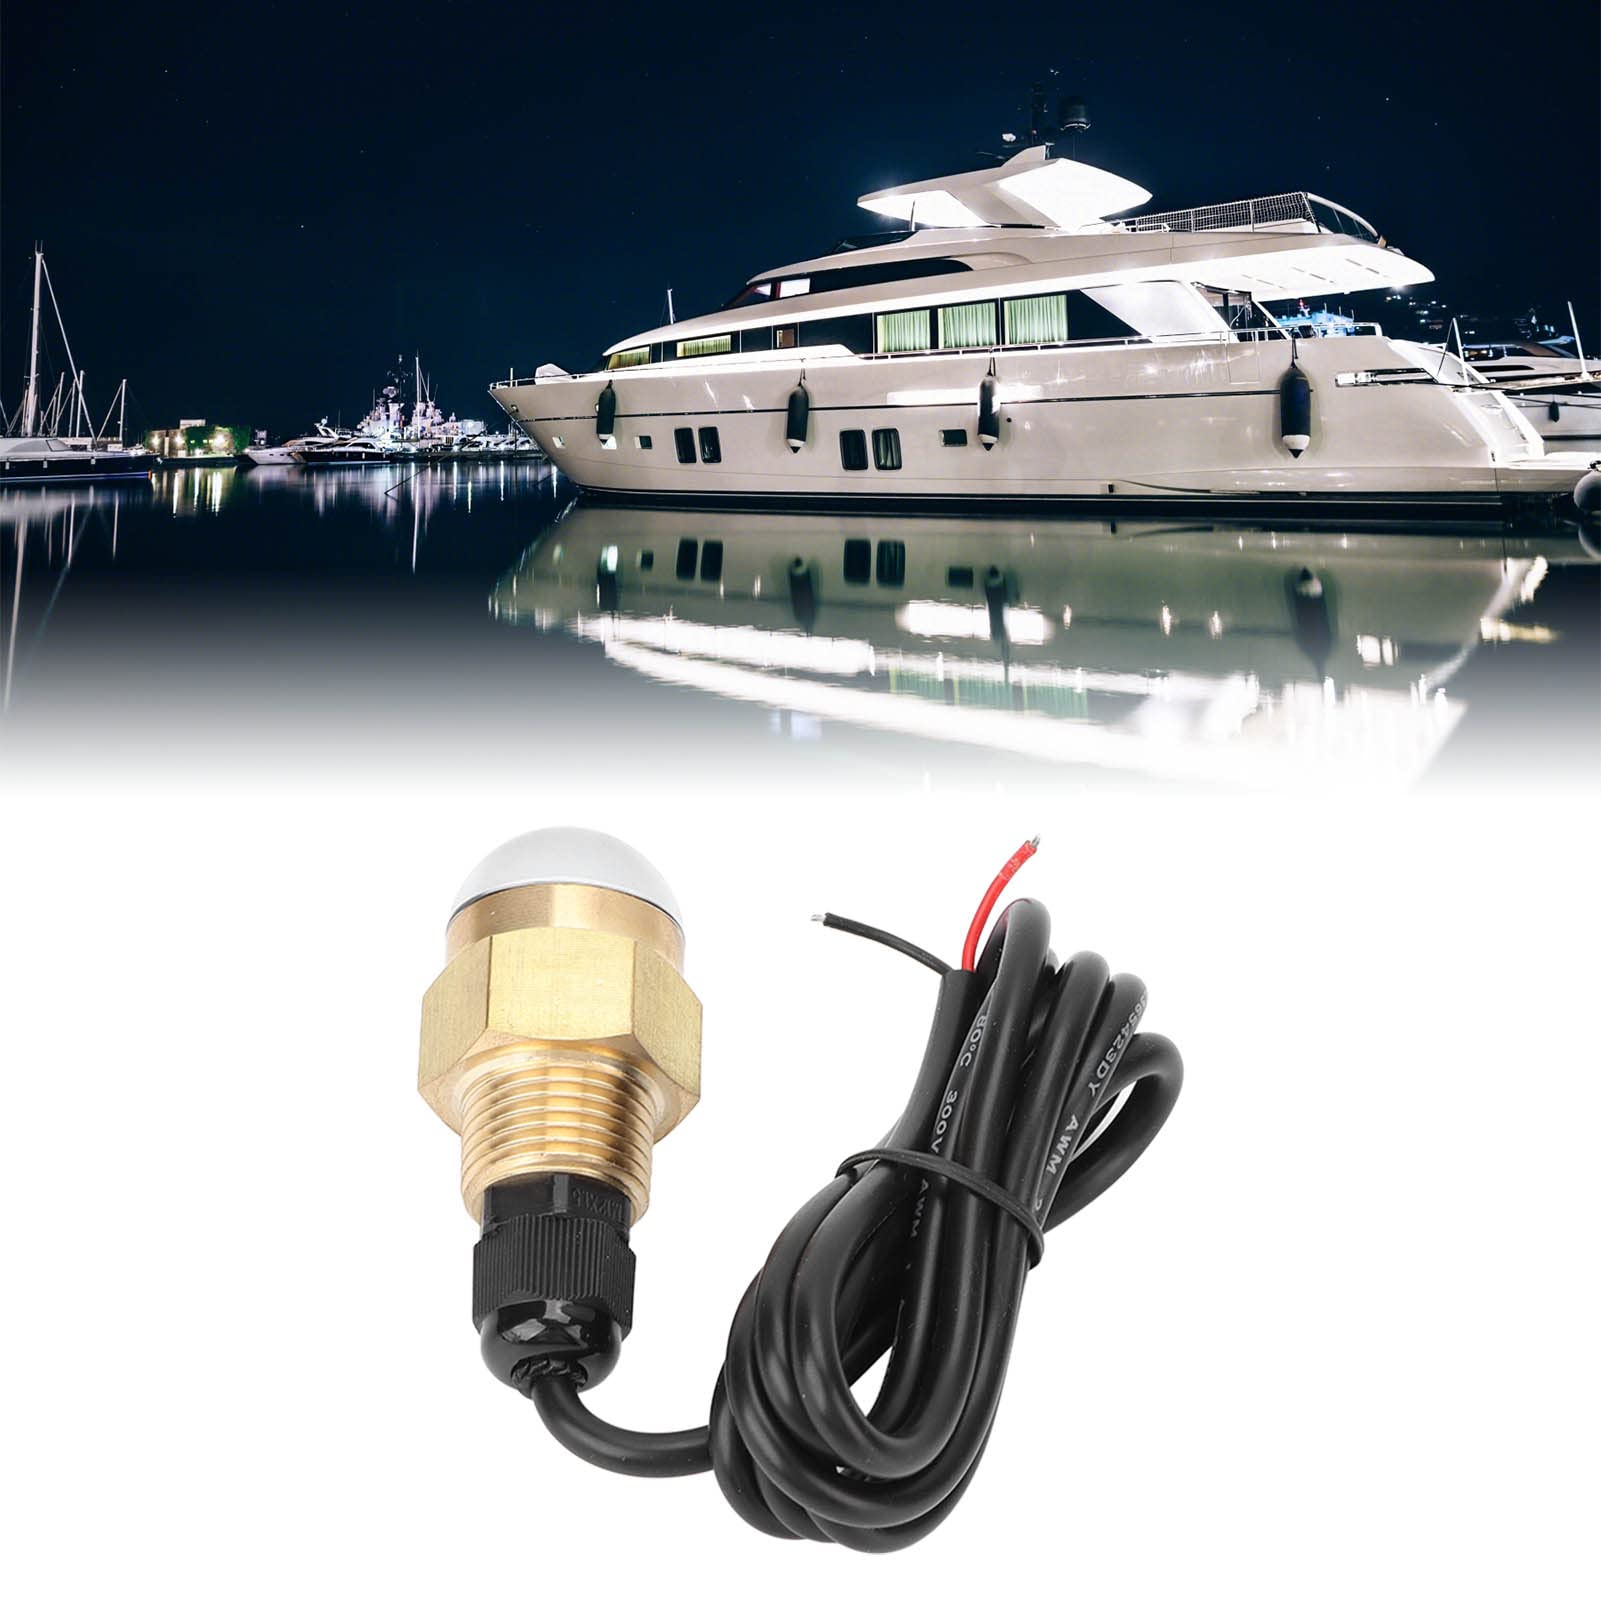 Niiyen Ablassschraube Licht LED Marine Boot Unterwasserlicht IP68 Wasserdicht 1/2 Zoll Gewinde 840LM Unterwasserlampe Universal Für Yachtschiff von Niiyen